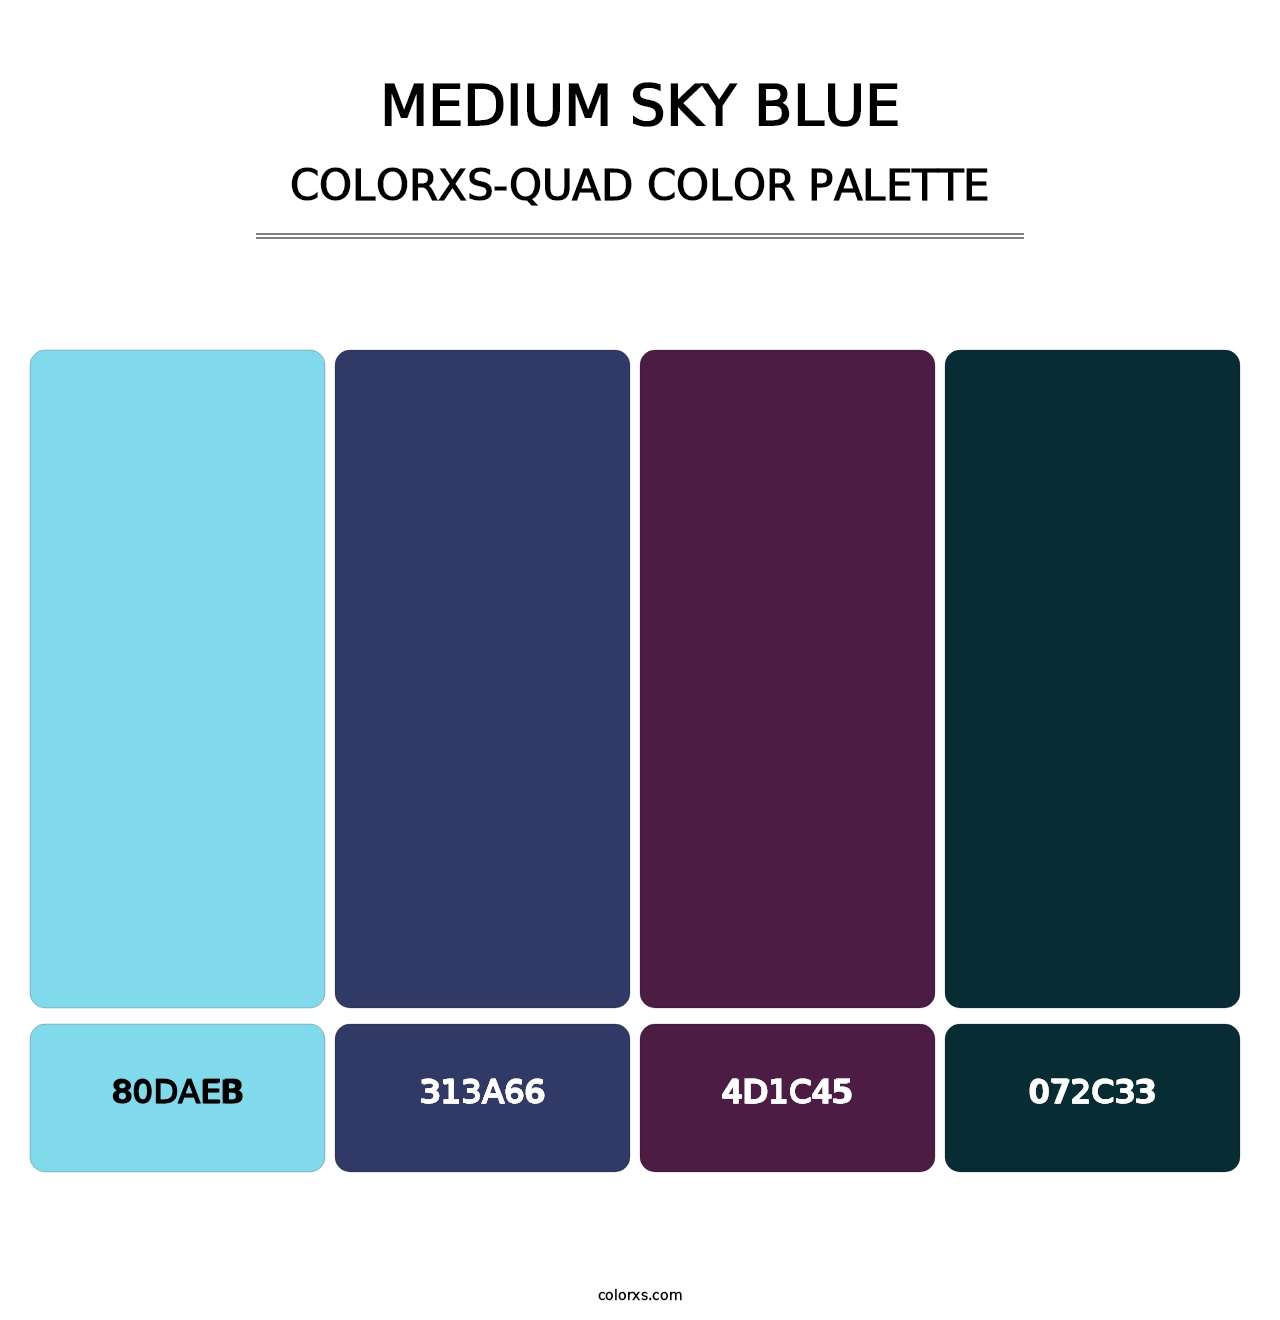 Medium Sky Blue - Colorxs Quad Palette